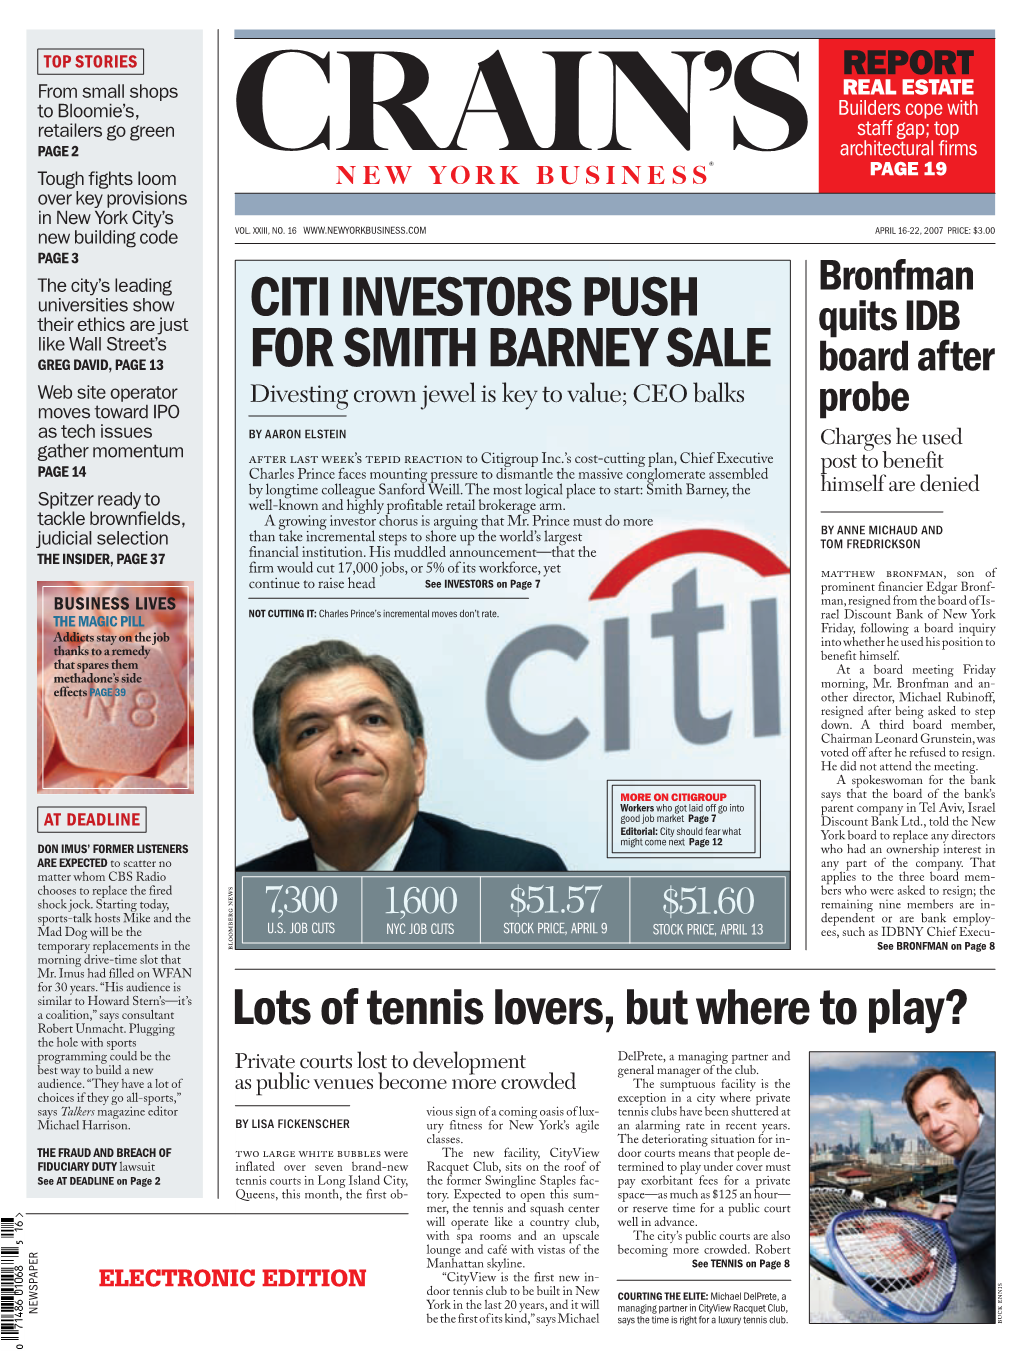 Citi Investors Push for Smith Barney Sale